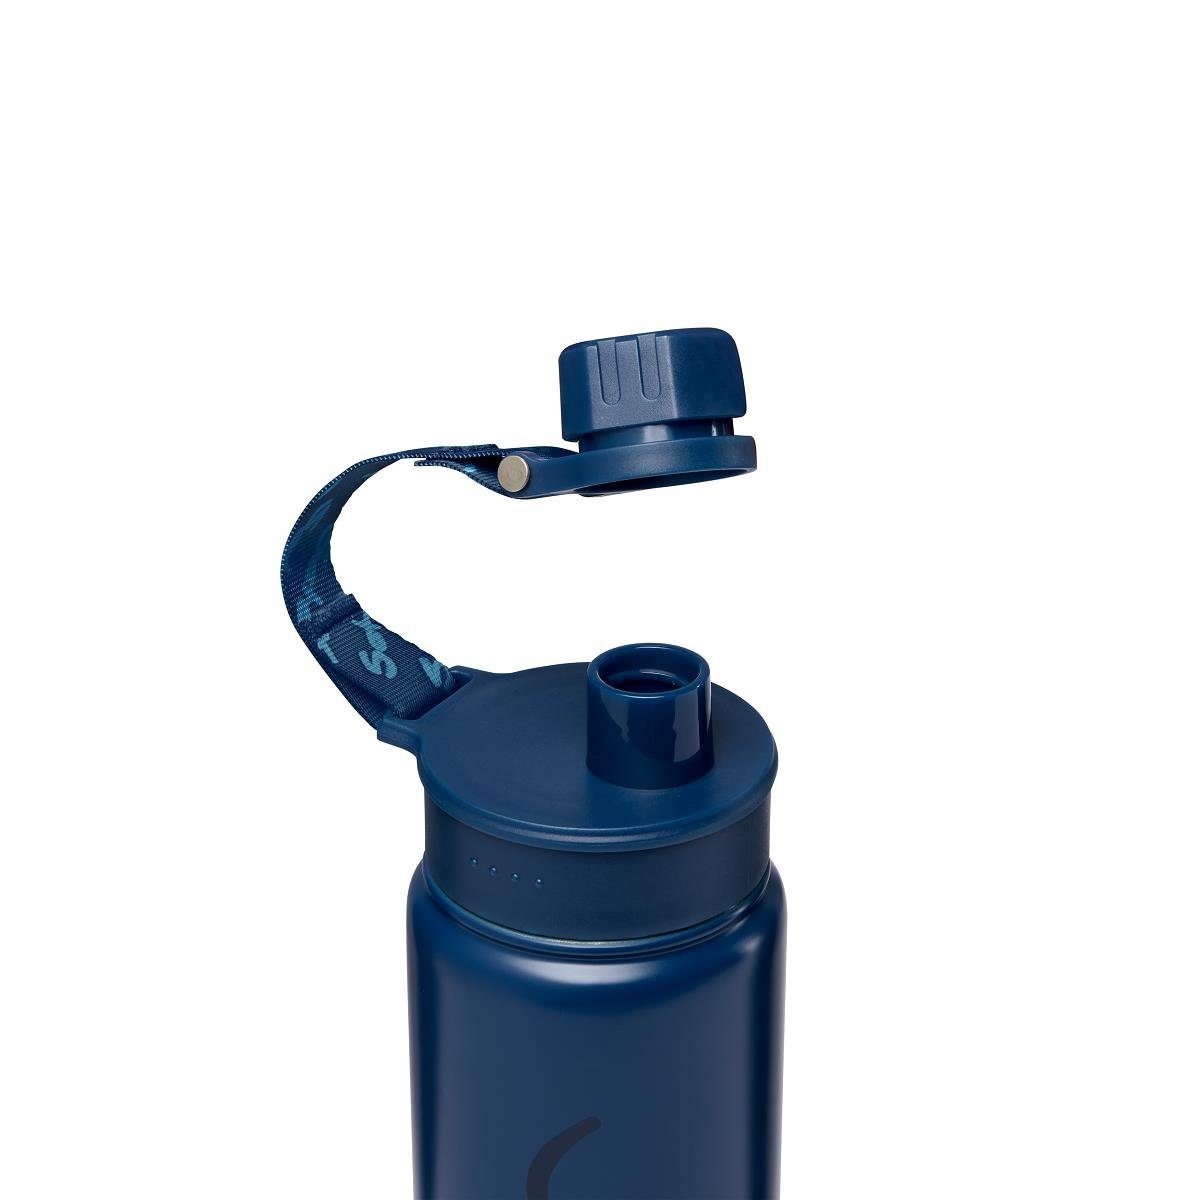 Satch 648 BPA-frei Trinkflasche blue Edelstahl-Trinkflasche,